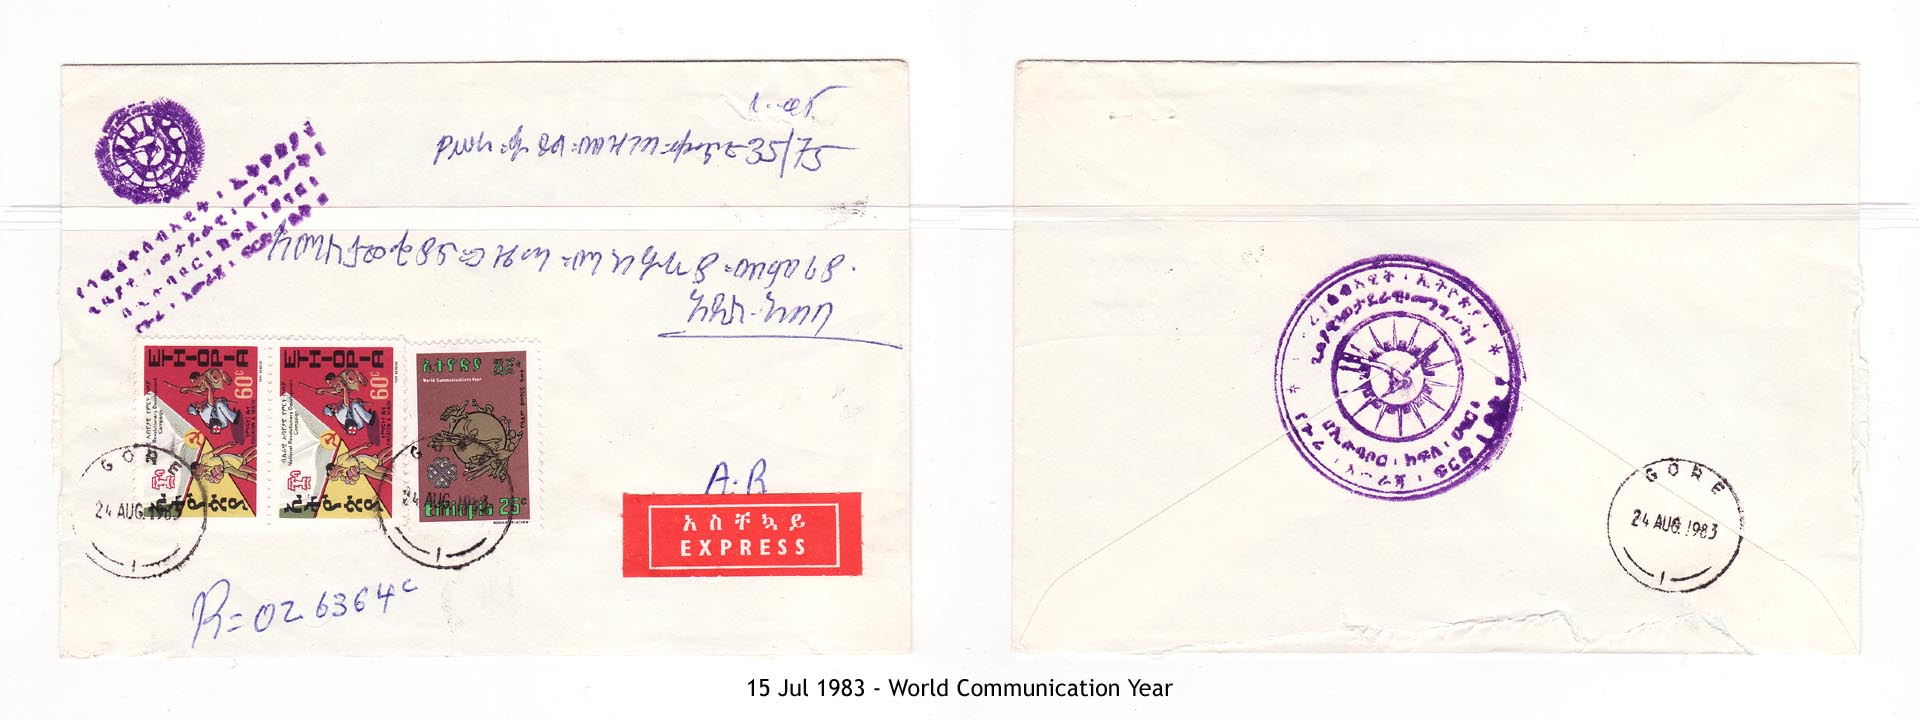 19830715 - World Communication Year